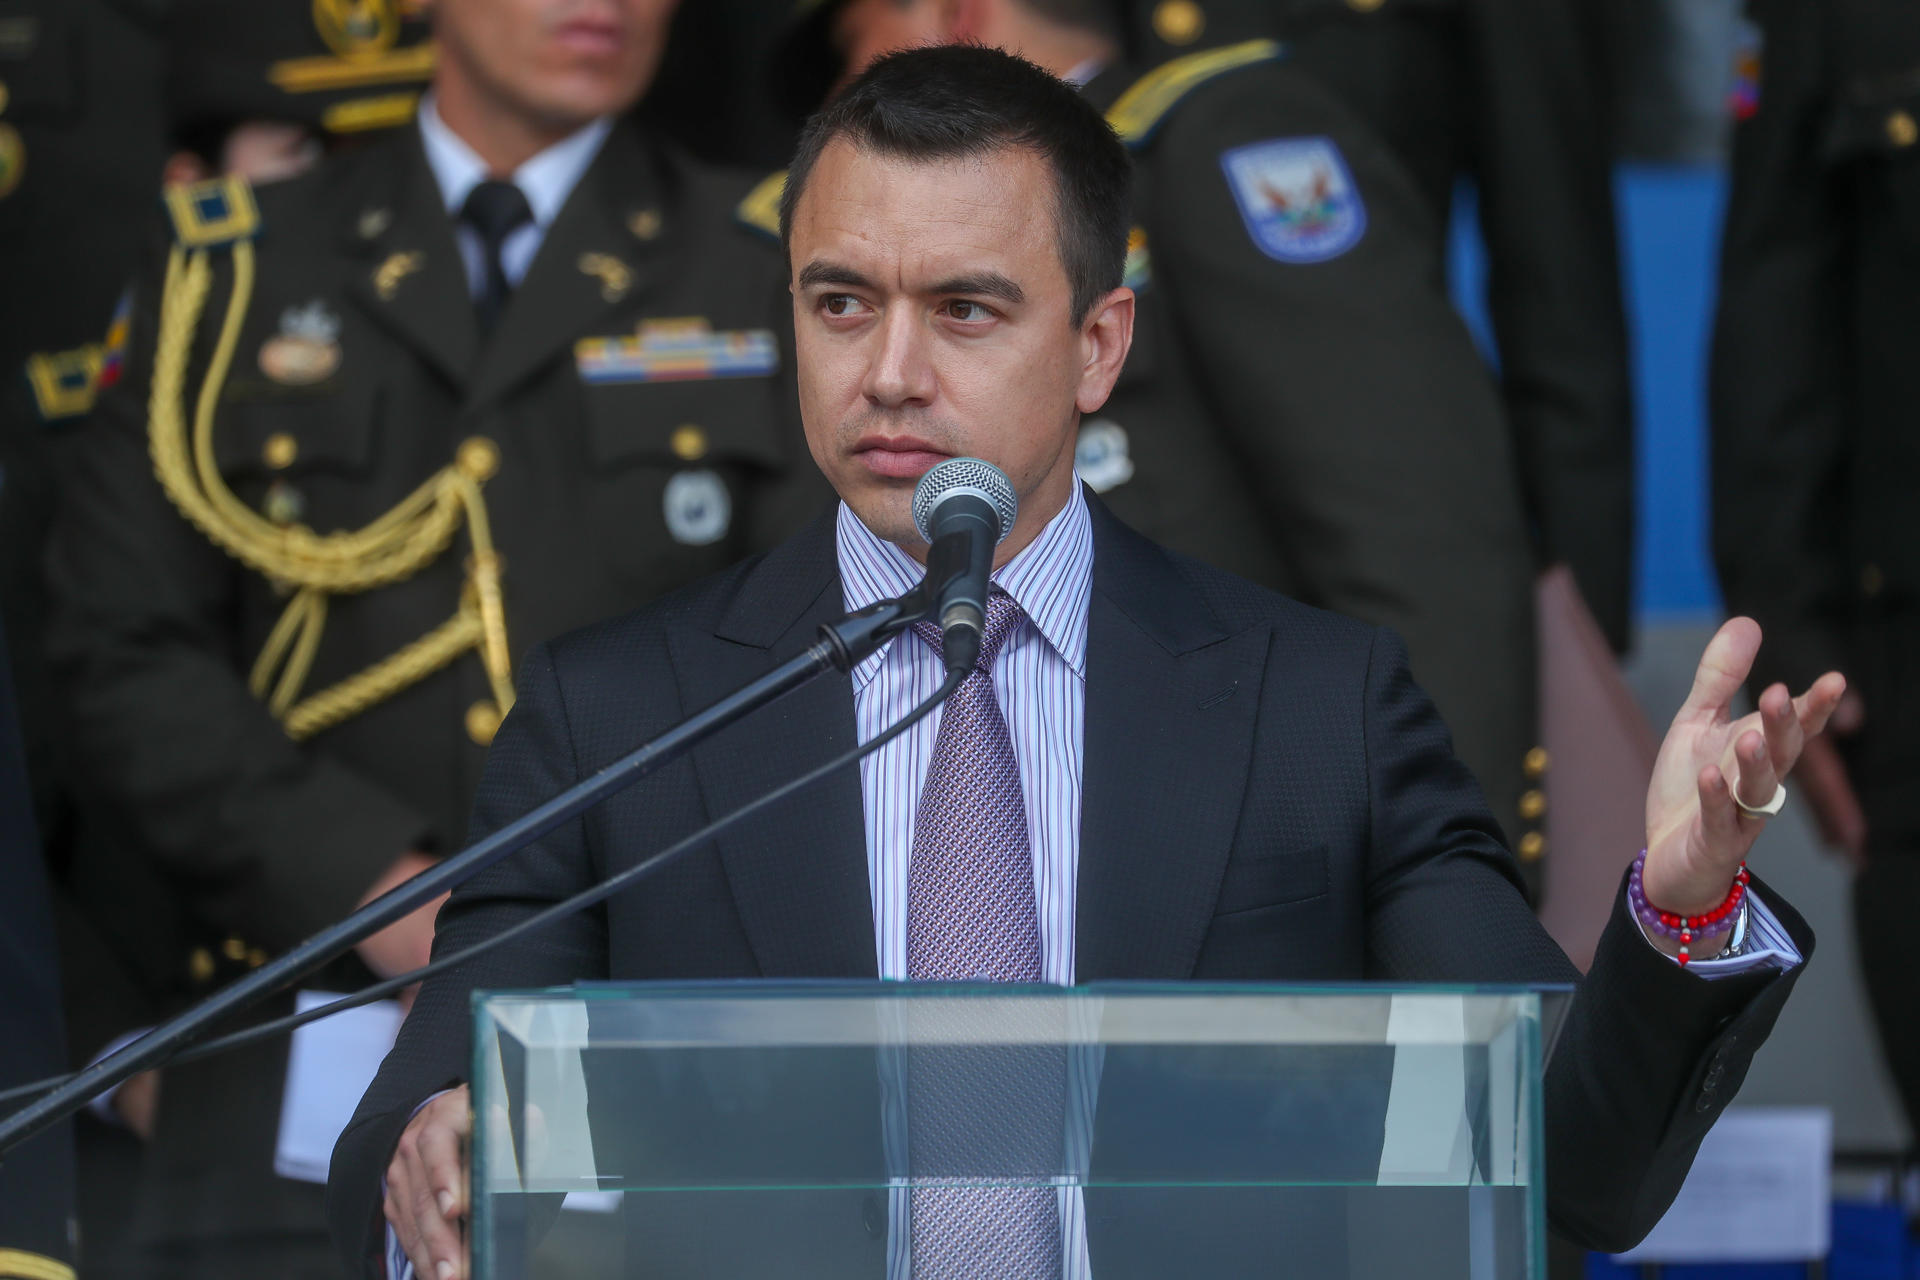 El presidente de Ecuador, Daniel Noboa, en una fotografía de archivo. EFE/José Jácome